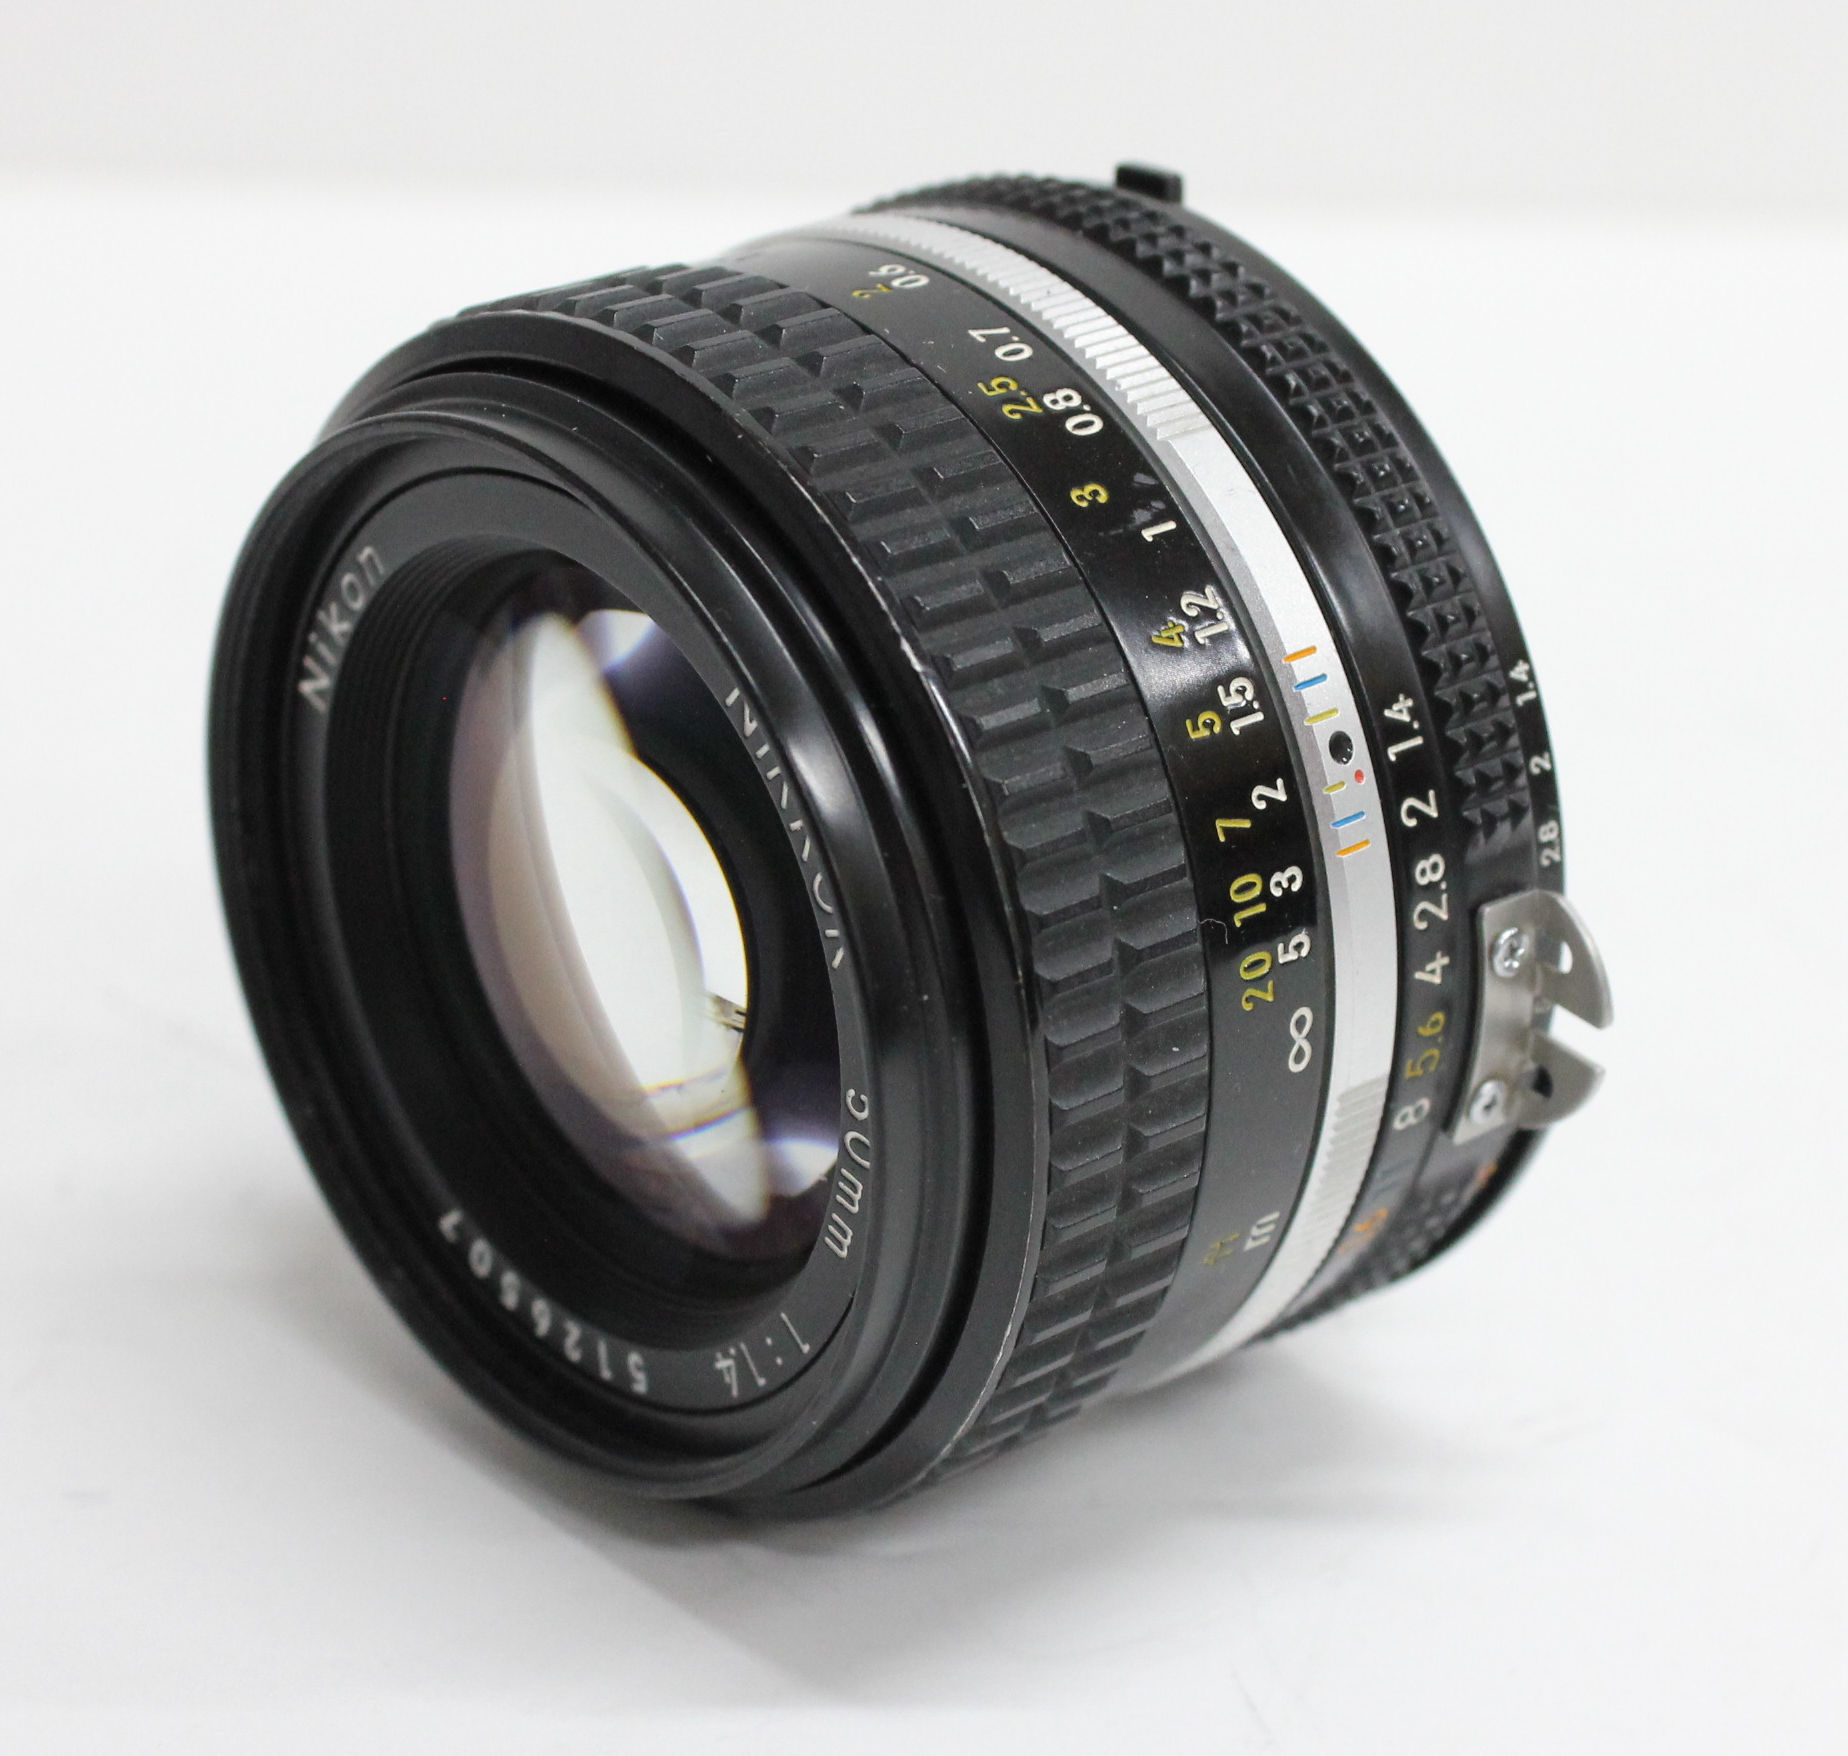 Nikon New FM2 FM2N Camera w/Ai-s 50mm F/1.4 Lens from Japan (C1164